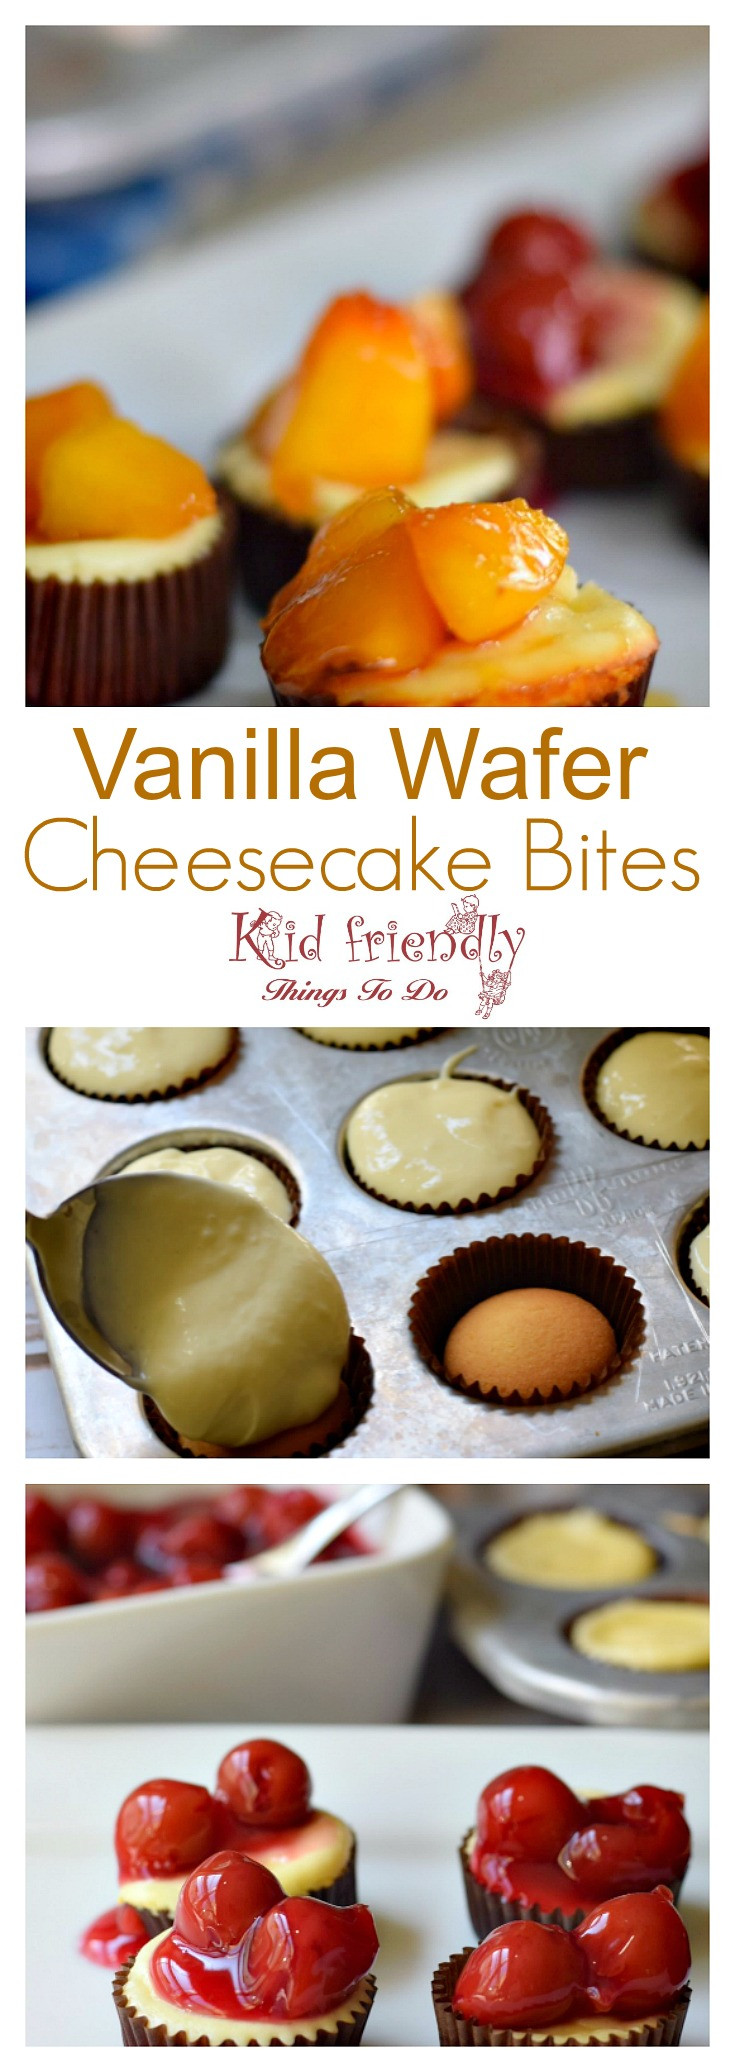 Vanilla Wafers Cheese Cake
 Easy Vanilla Wafer Cheesecake Bites Recipe